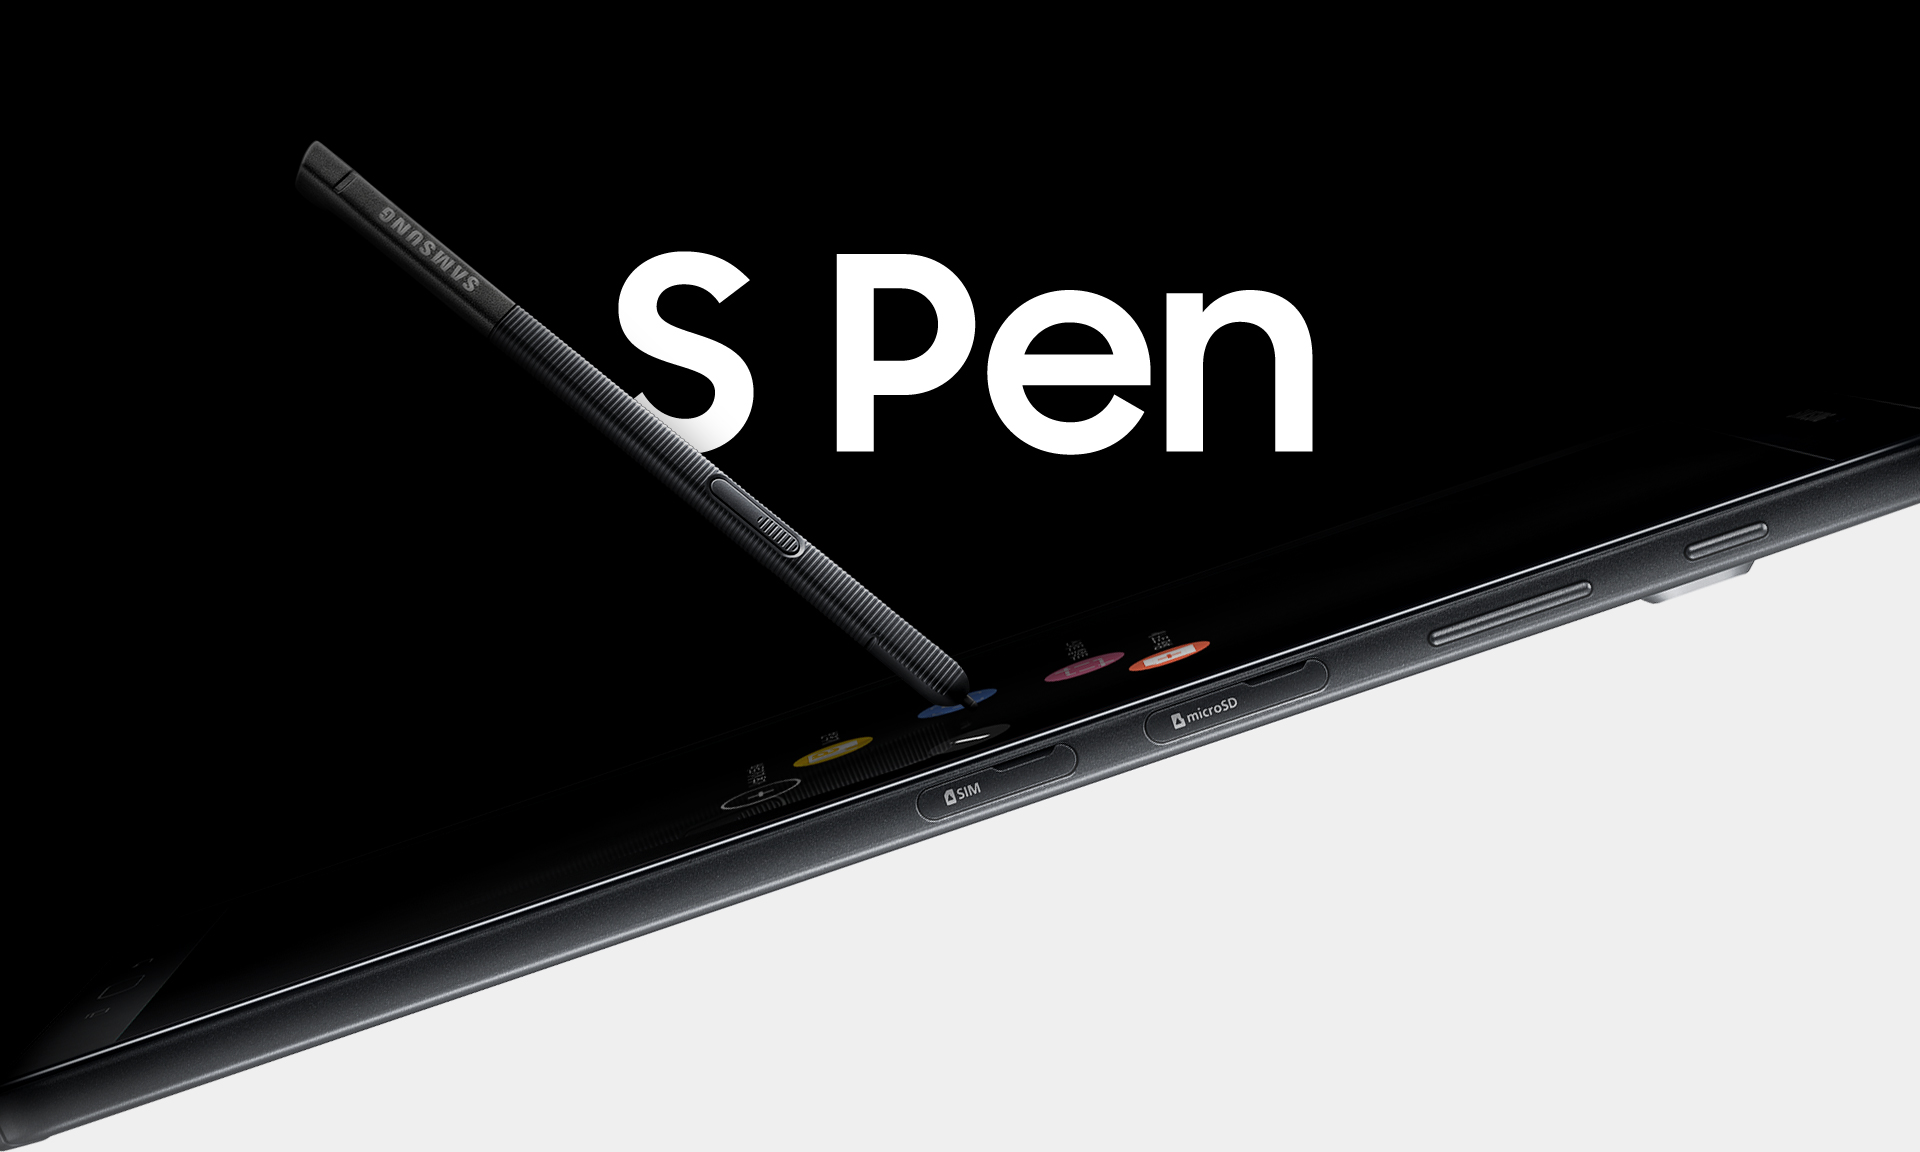 Samsung chính thức trình làng Galaxy Tab A (2016) với bút S Pen